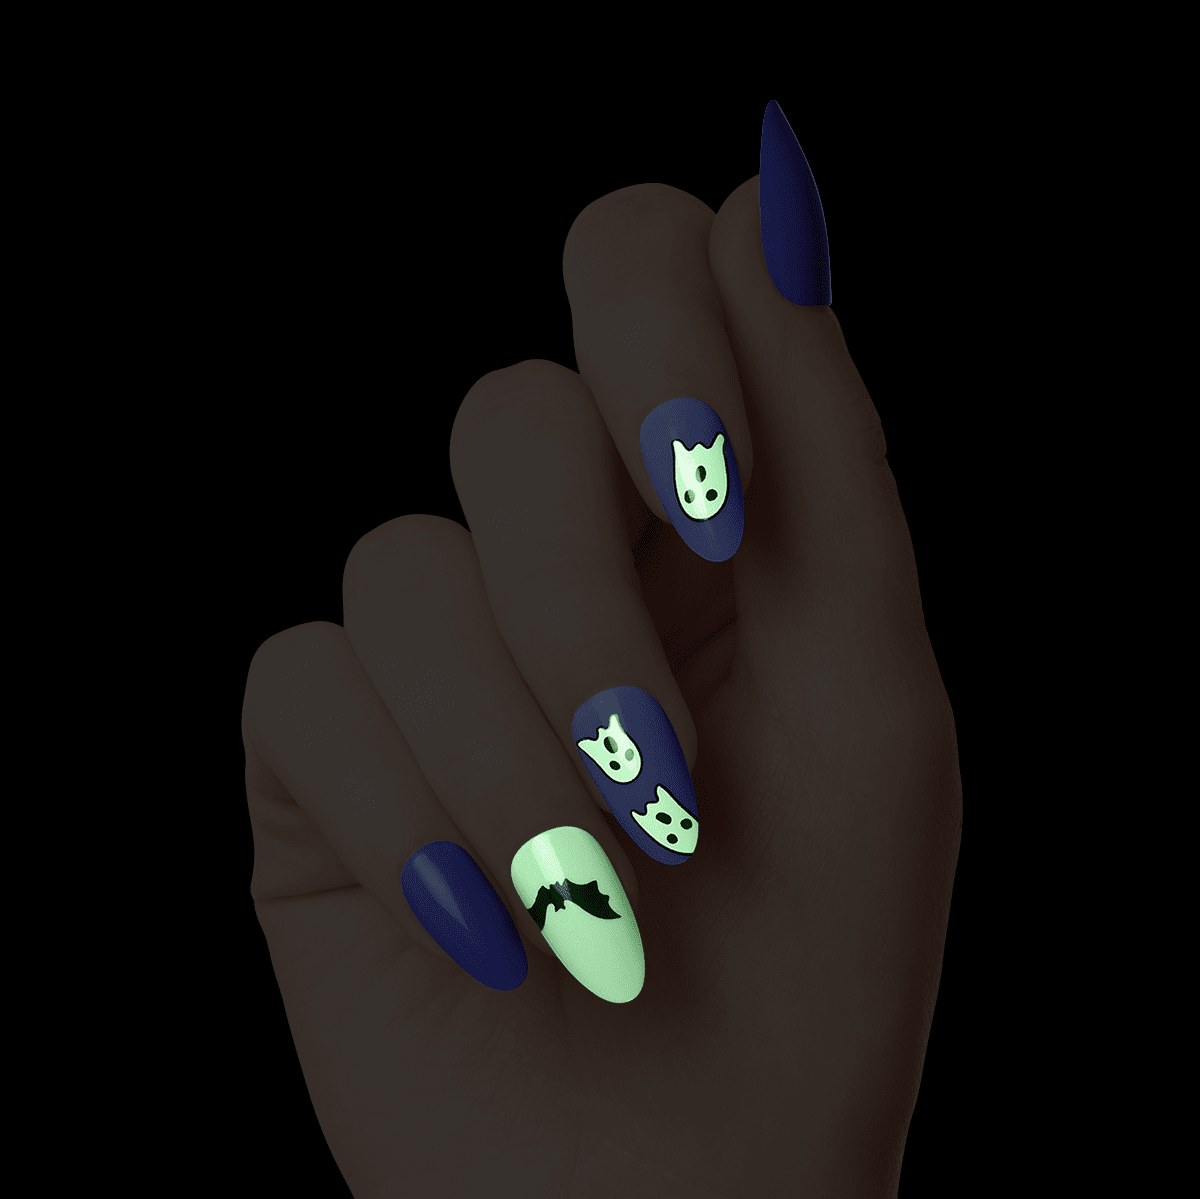 KISS Voguish Fantasy Glow-In-The-Dark Halloween Nails - After midnight